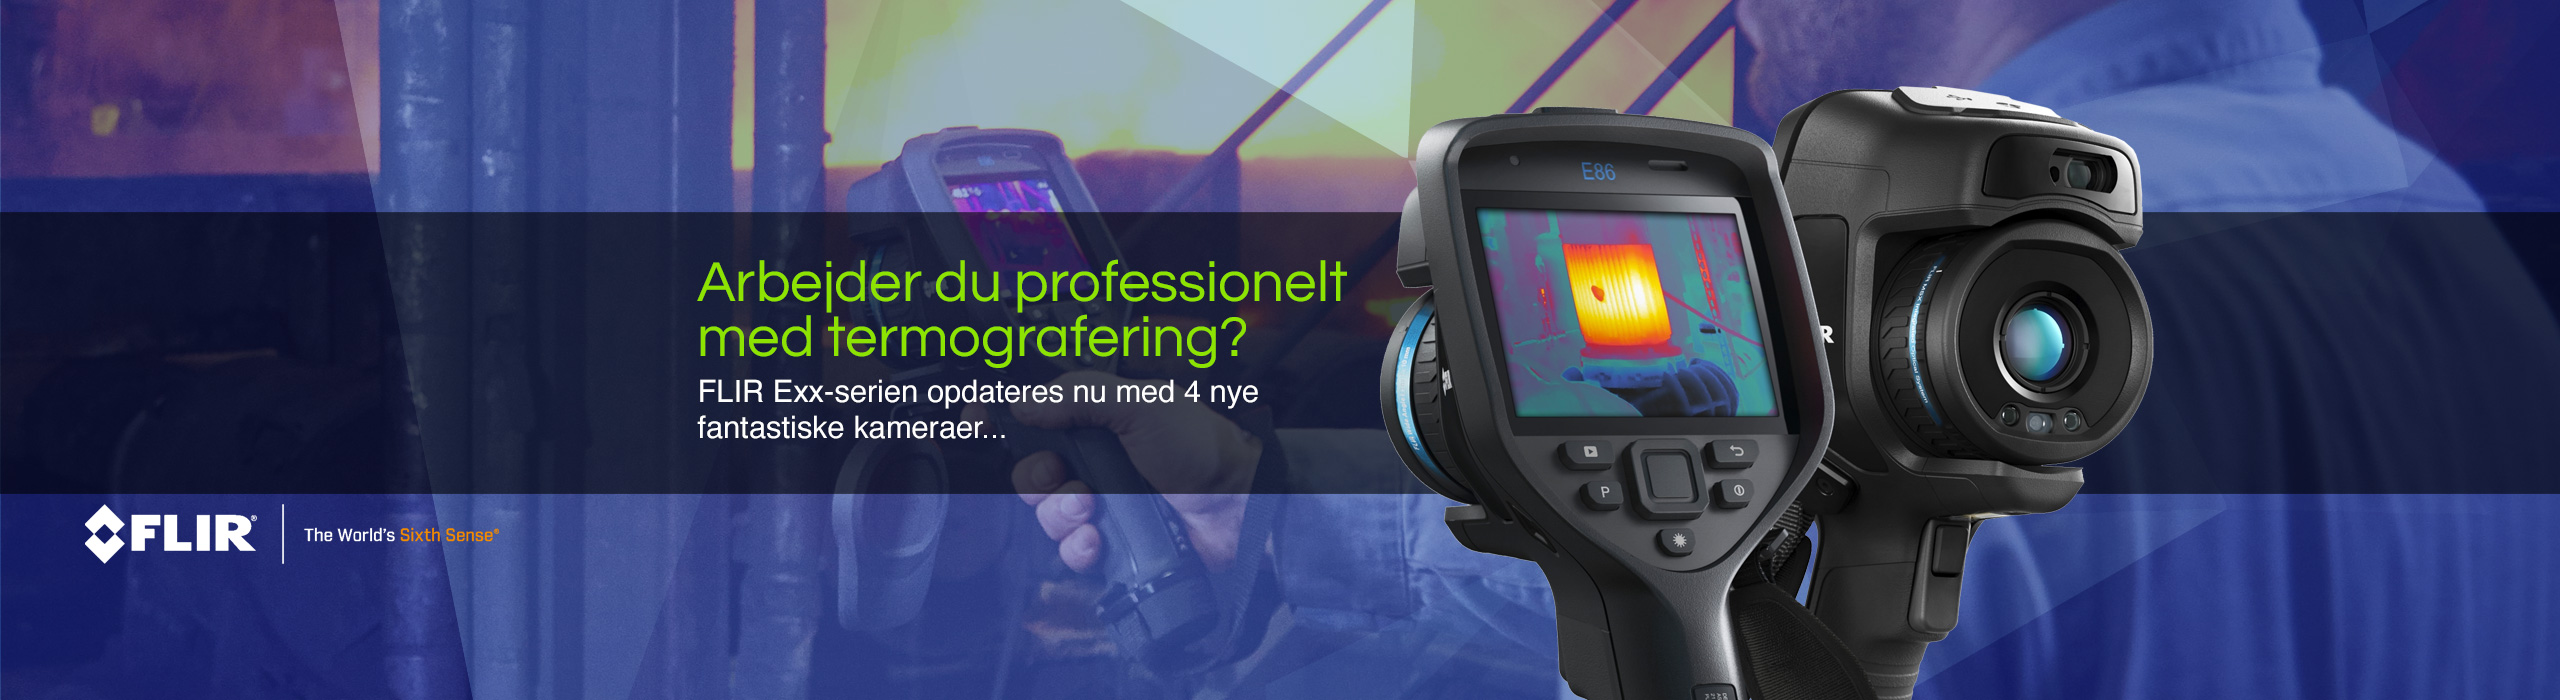 Arbejder du professionelt med termografering?